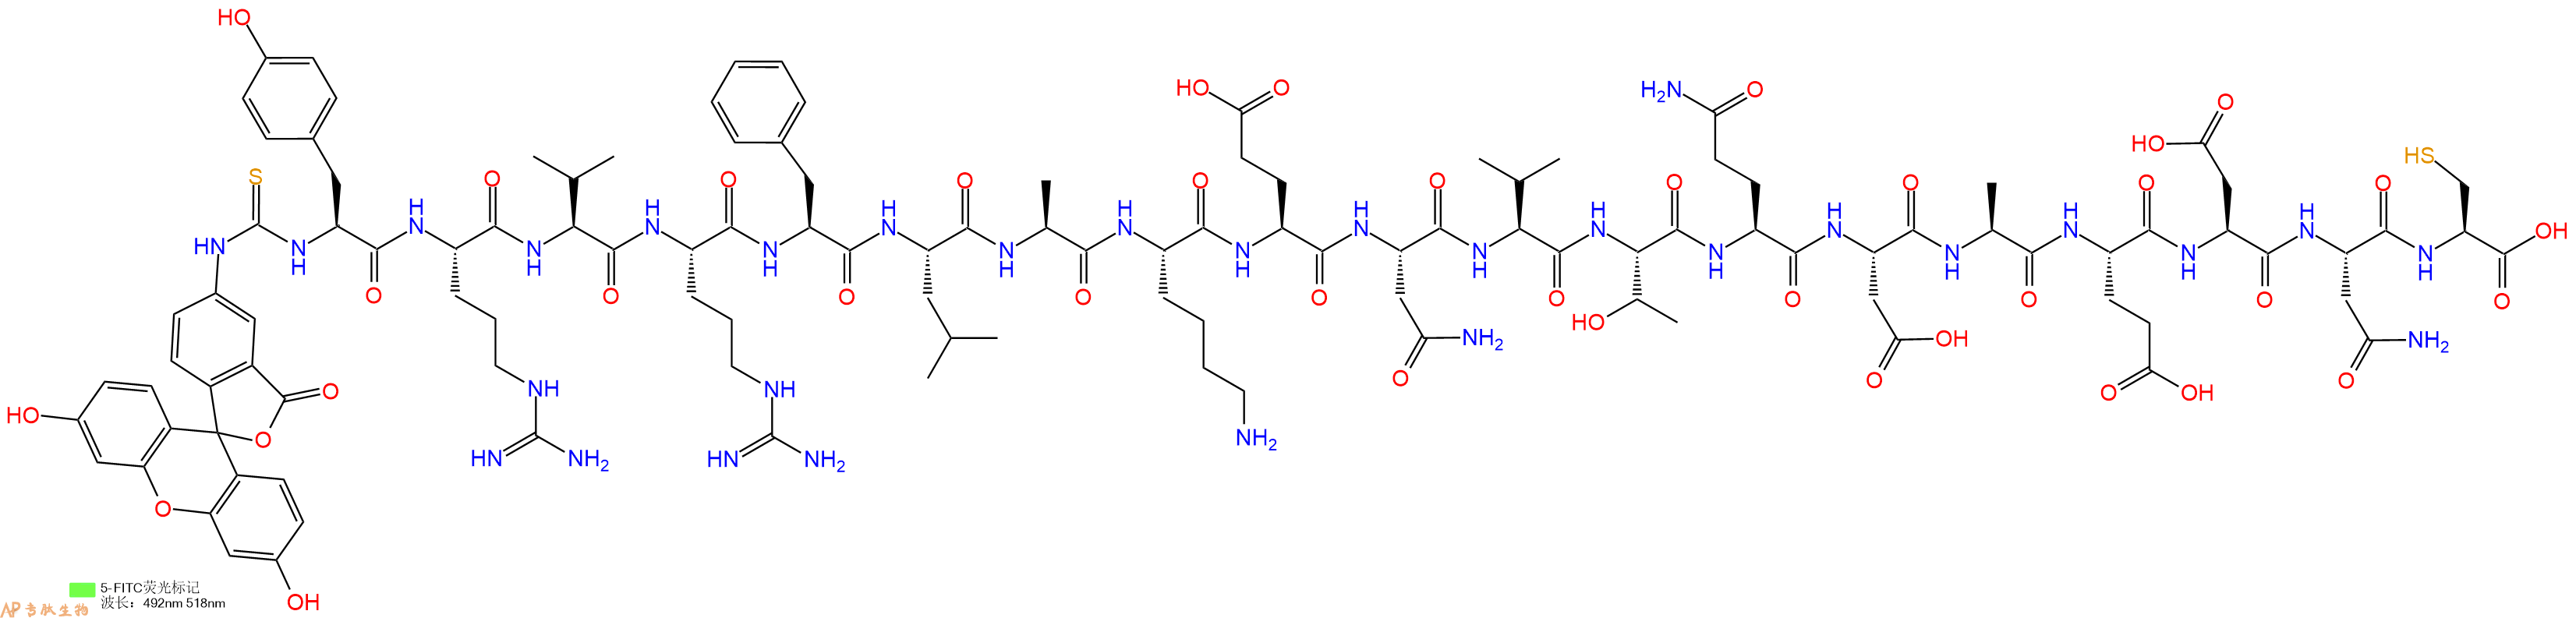 专肽生物产品十九肽Fitc-YRVRFLAKENVTQDAEDNC